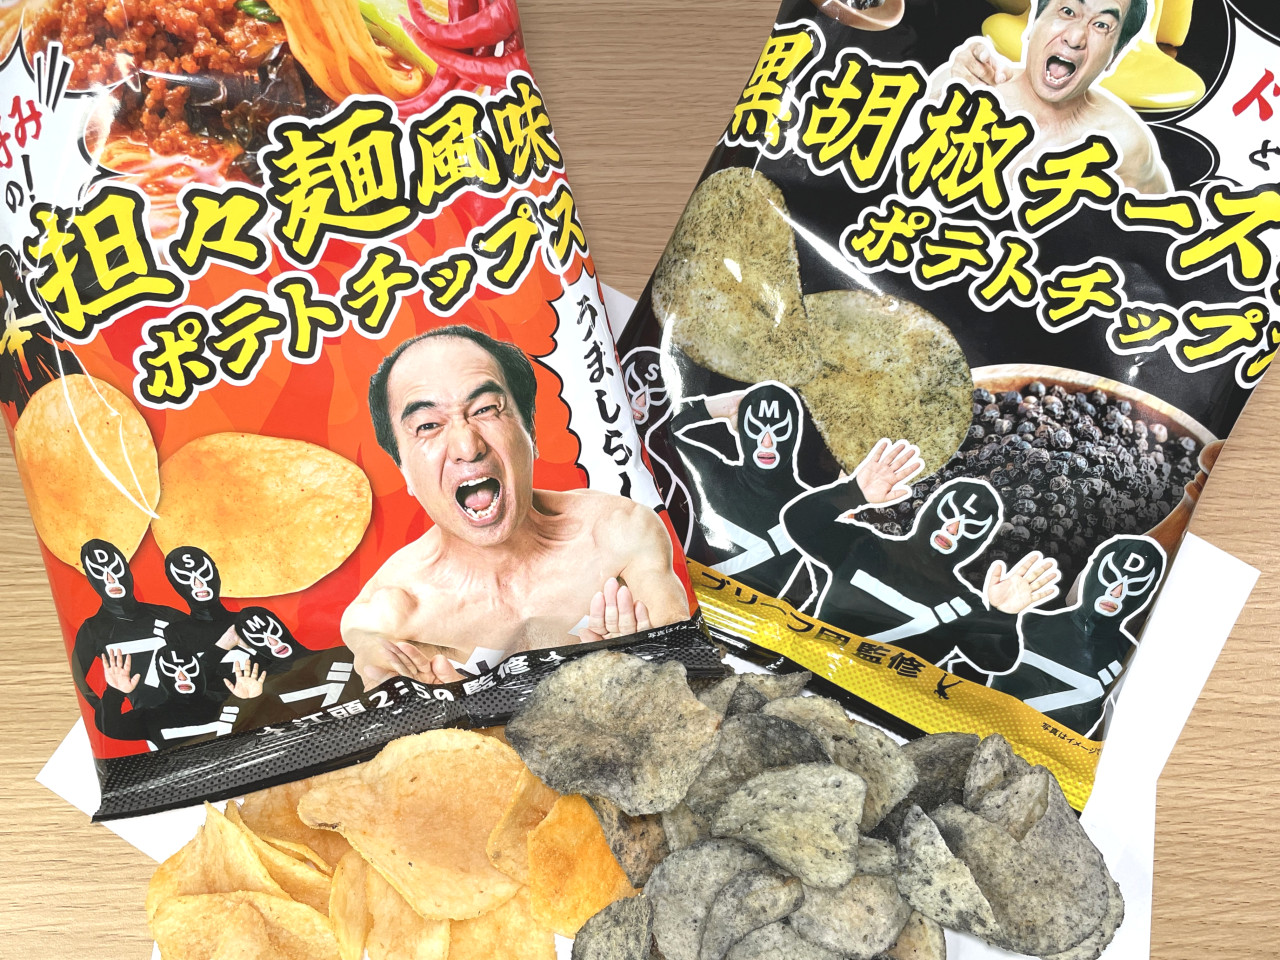 新発売 エガちゃんねる 黒胡椒 旨辛担々麺風味 Amazon.co.jp: ポテト